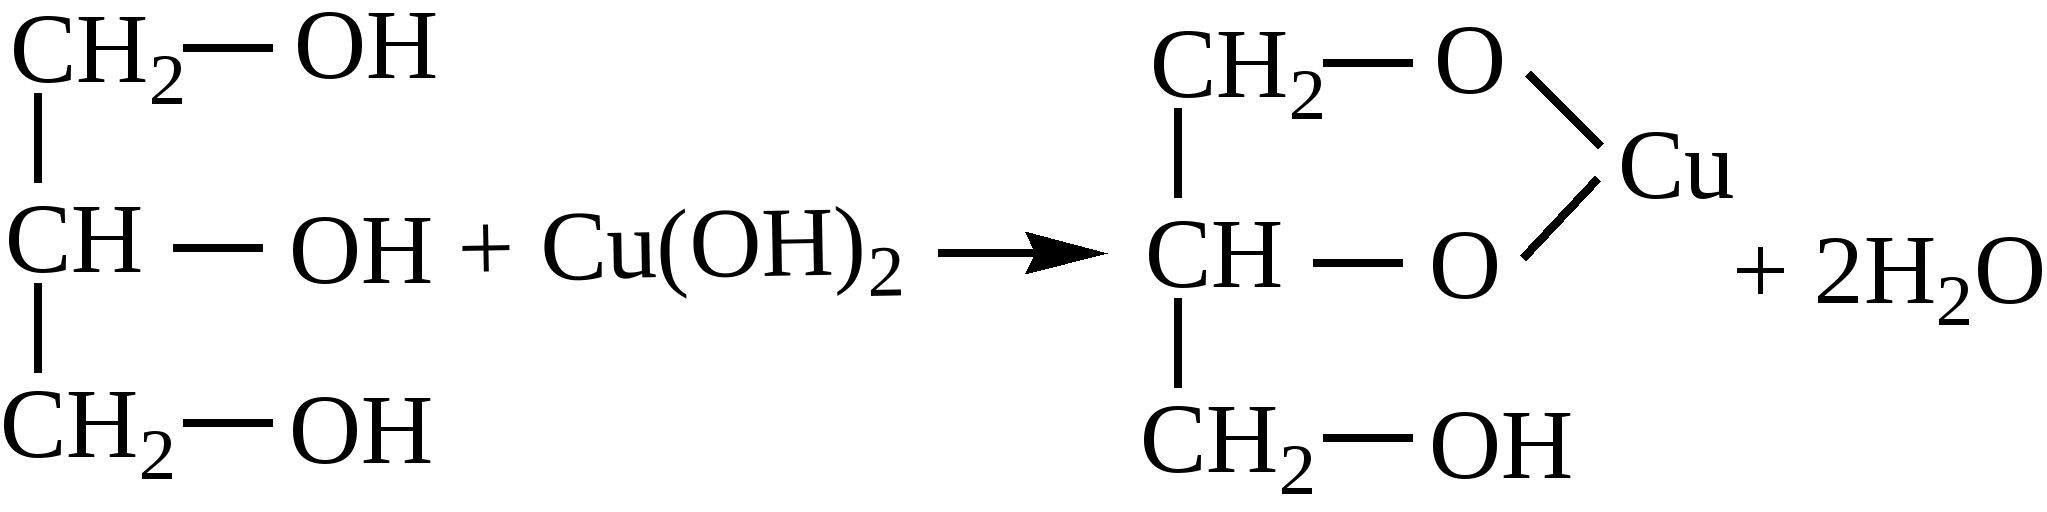 Cuoh2 это. Глицерин c3h5(Oh)3 структурная формула. Cuoh2 c3h8o3. Этилен и гидроксид меди.